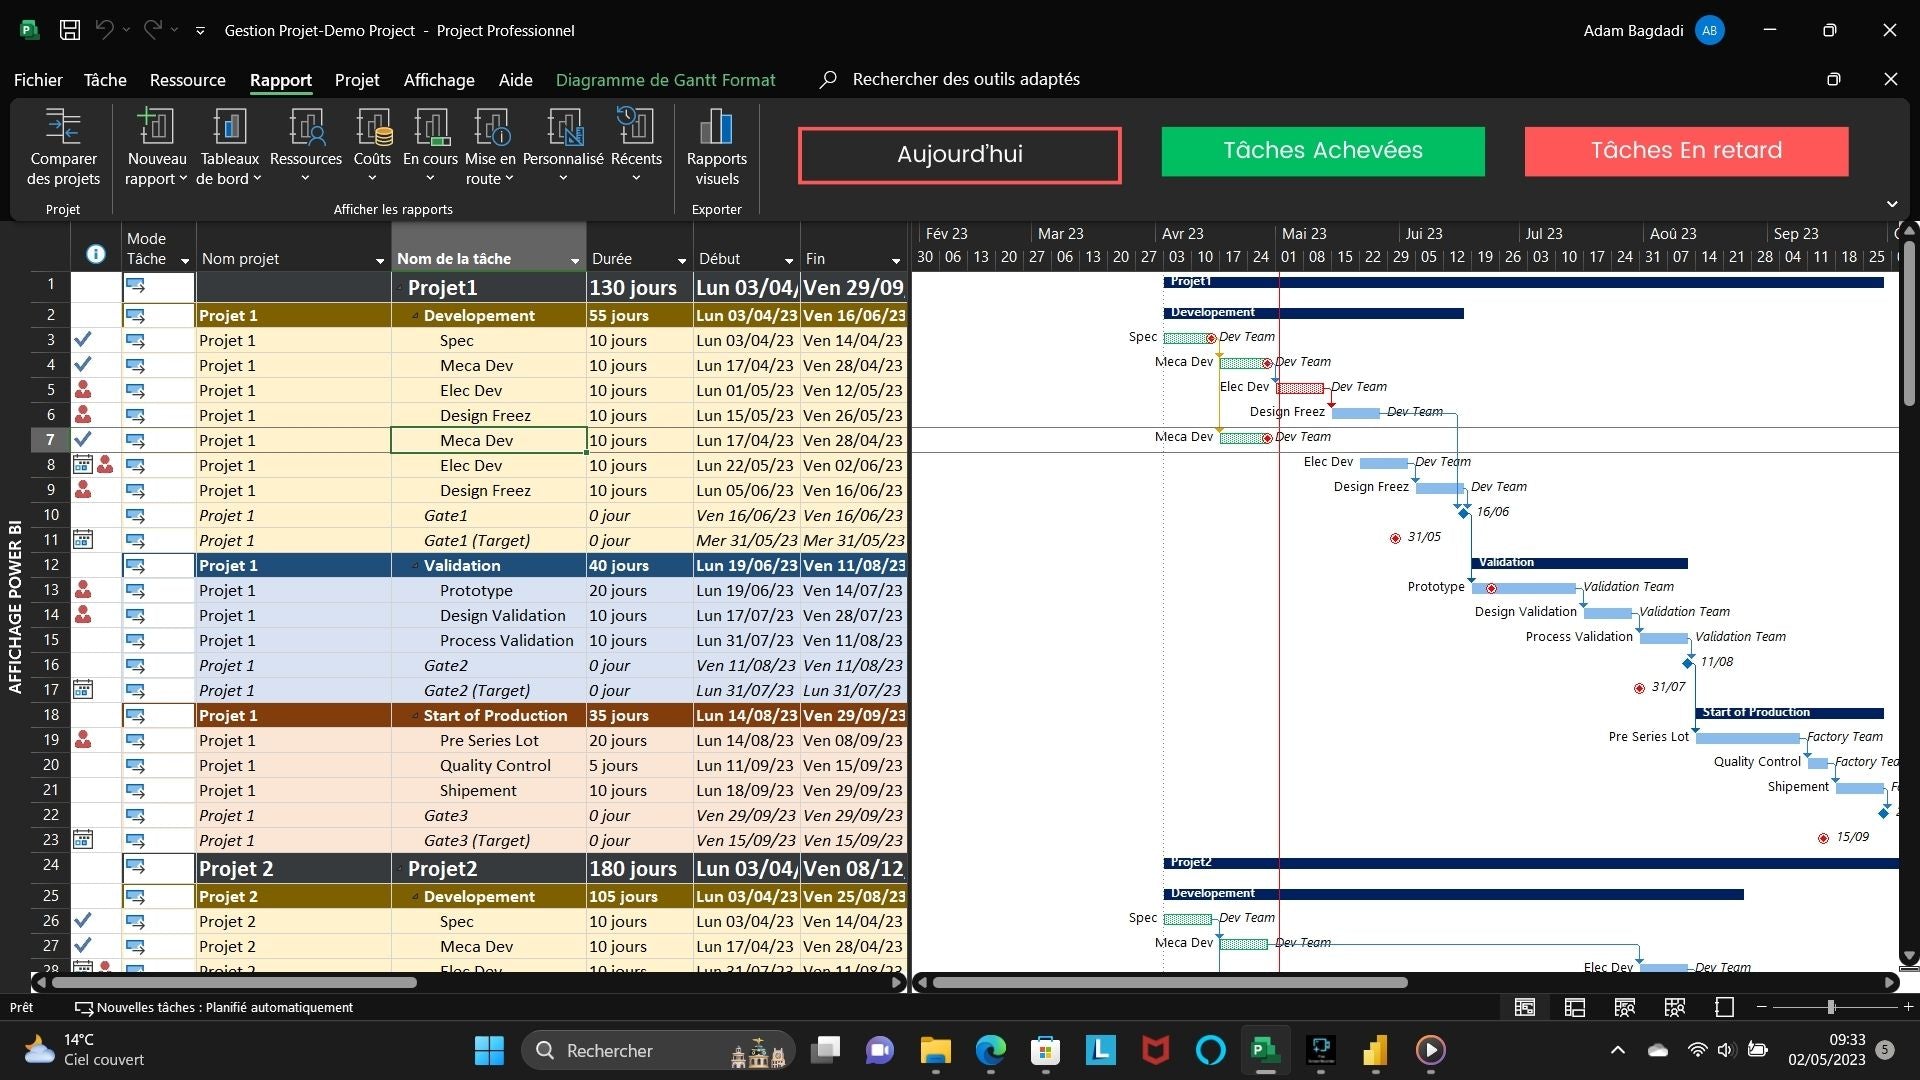 Capture d'écran montrant un tableau de Gantt dans Microsoft Project utilisé pendant une session de formation. Les tâches, durées et dépendances sont visuellement représentées sur un calendrier pour la gestion de projet.